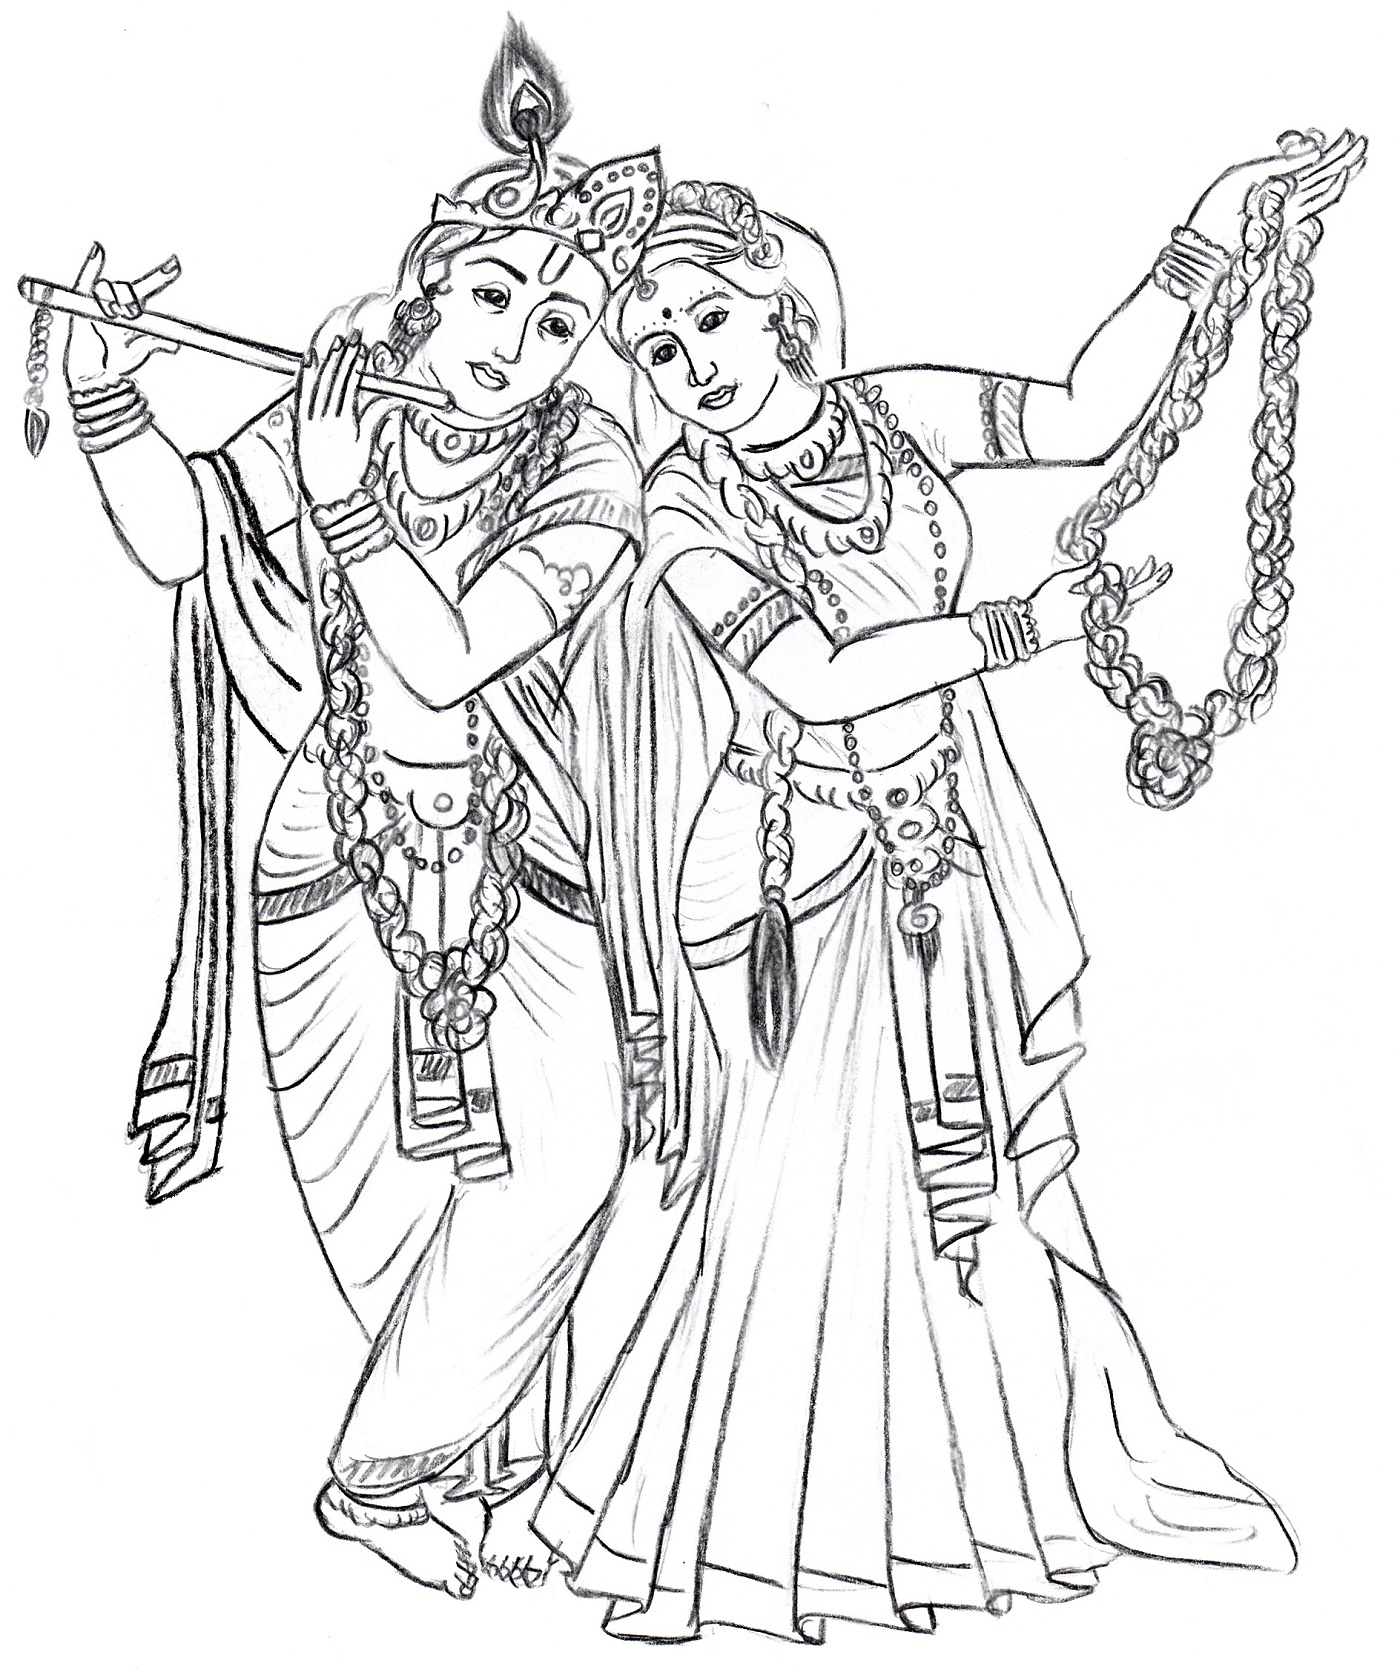 Krishanu Mistry Arts - 🌿Radha Krishna Drawing🌿 🌿Colour pencil drawing🌿 # radhakrishna #krishna #Radha #radharani #Lord #God | Facebook